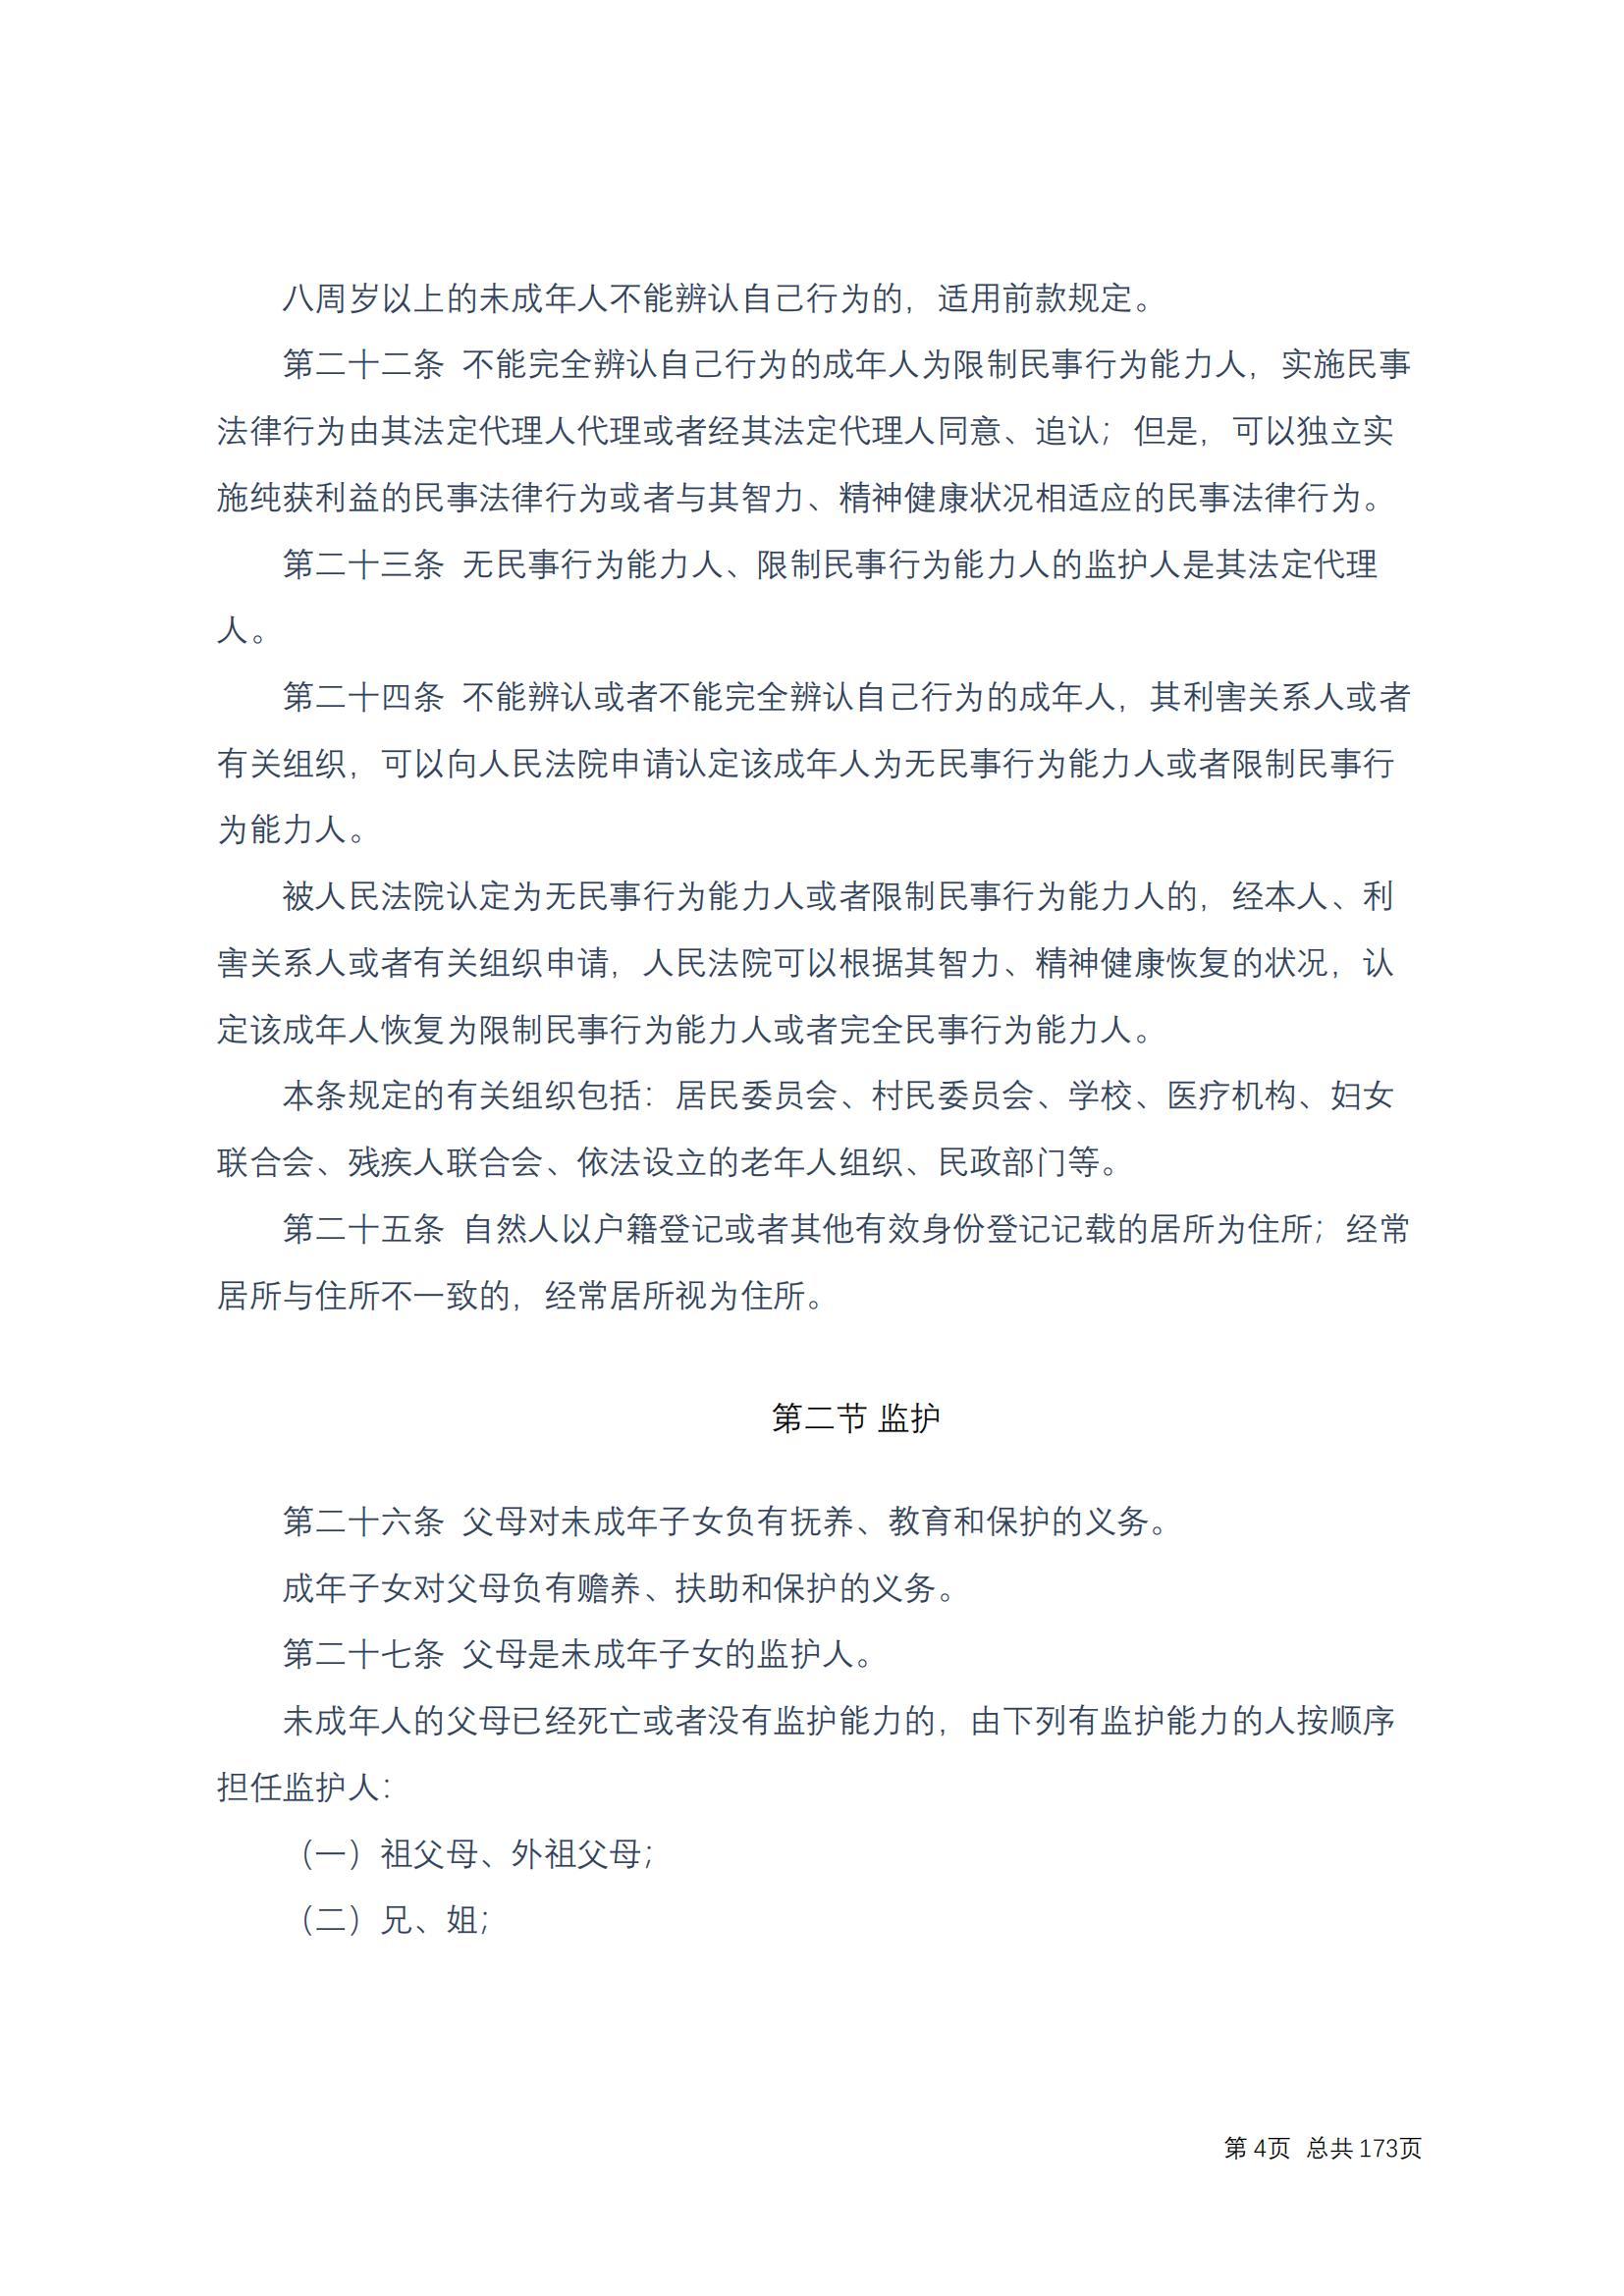 中华人民共和国民法典 修改过_03